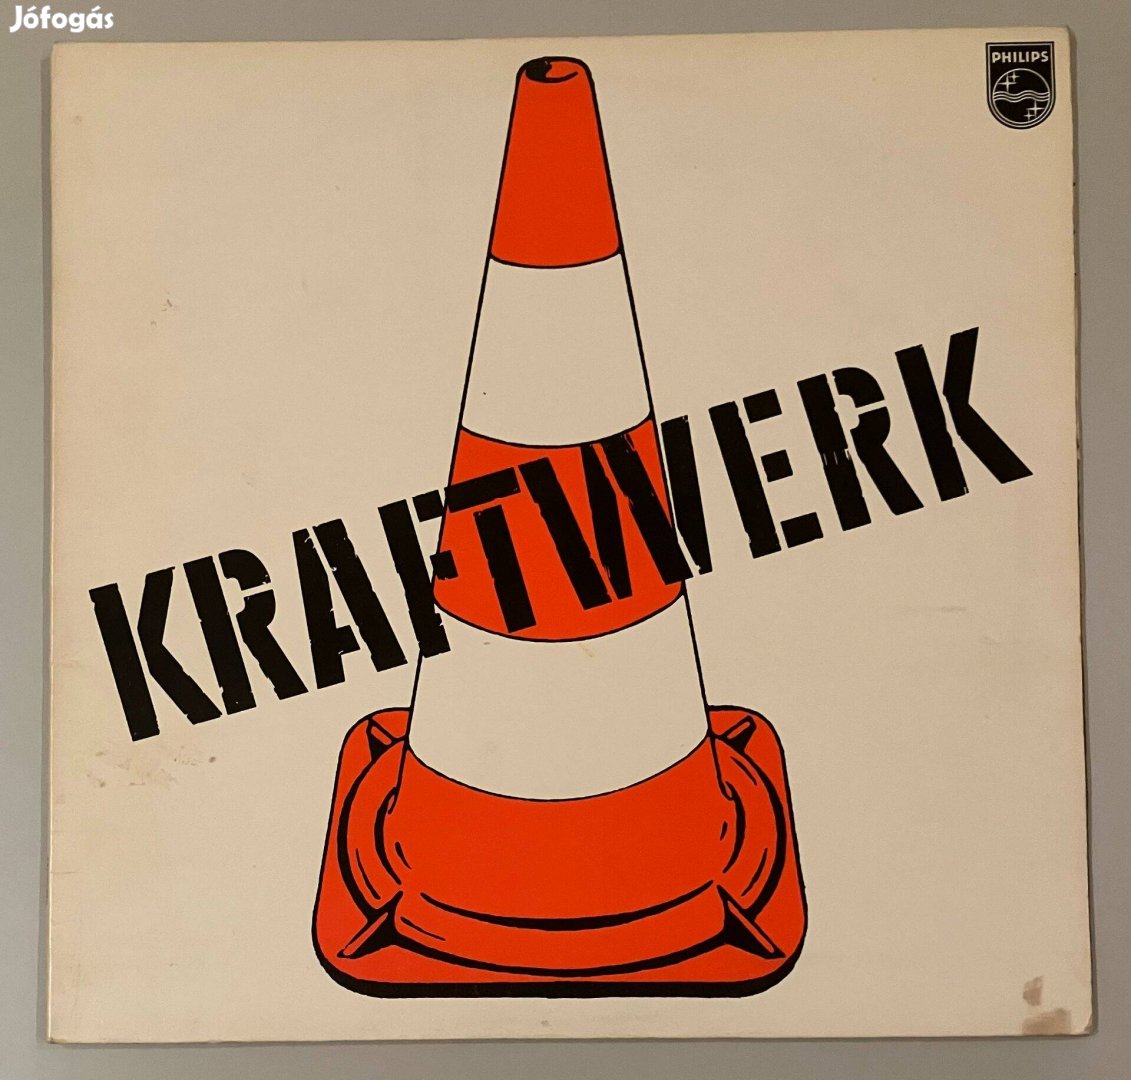 Kraftwerk - Kraftwerk 1 (Made in Germany, 1970)